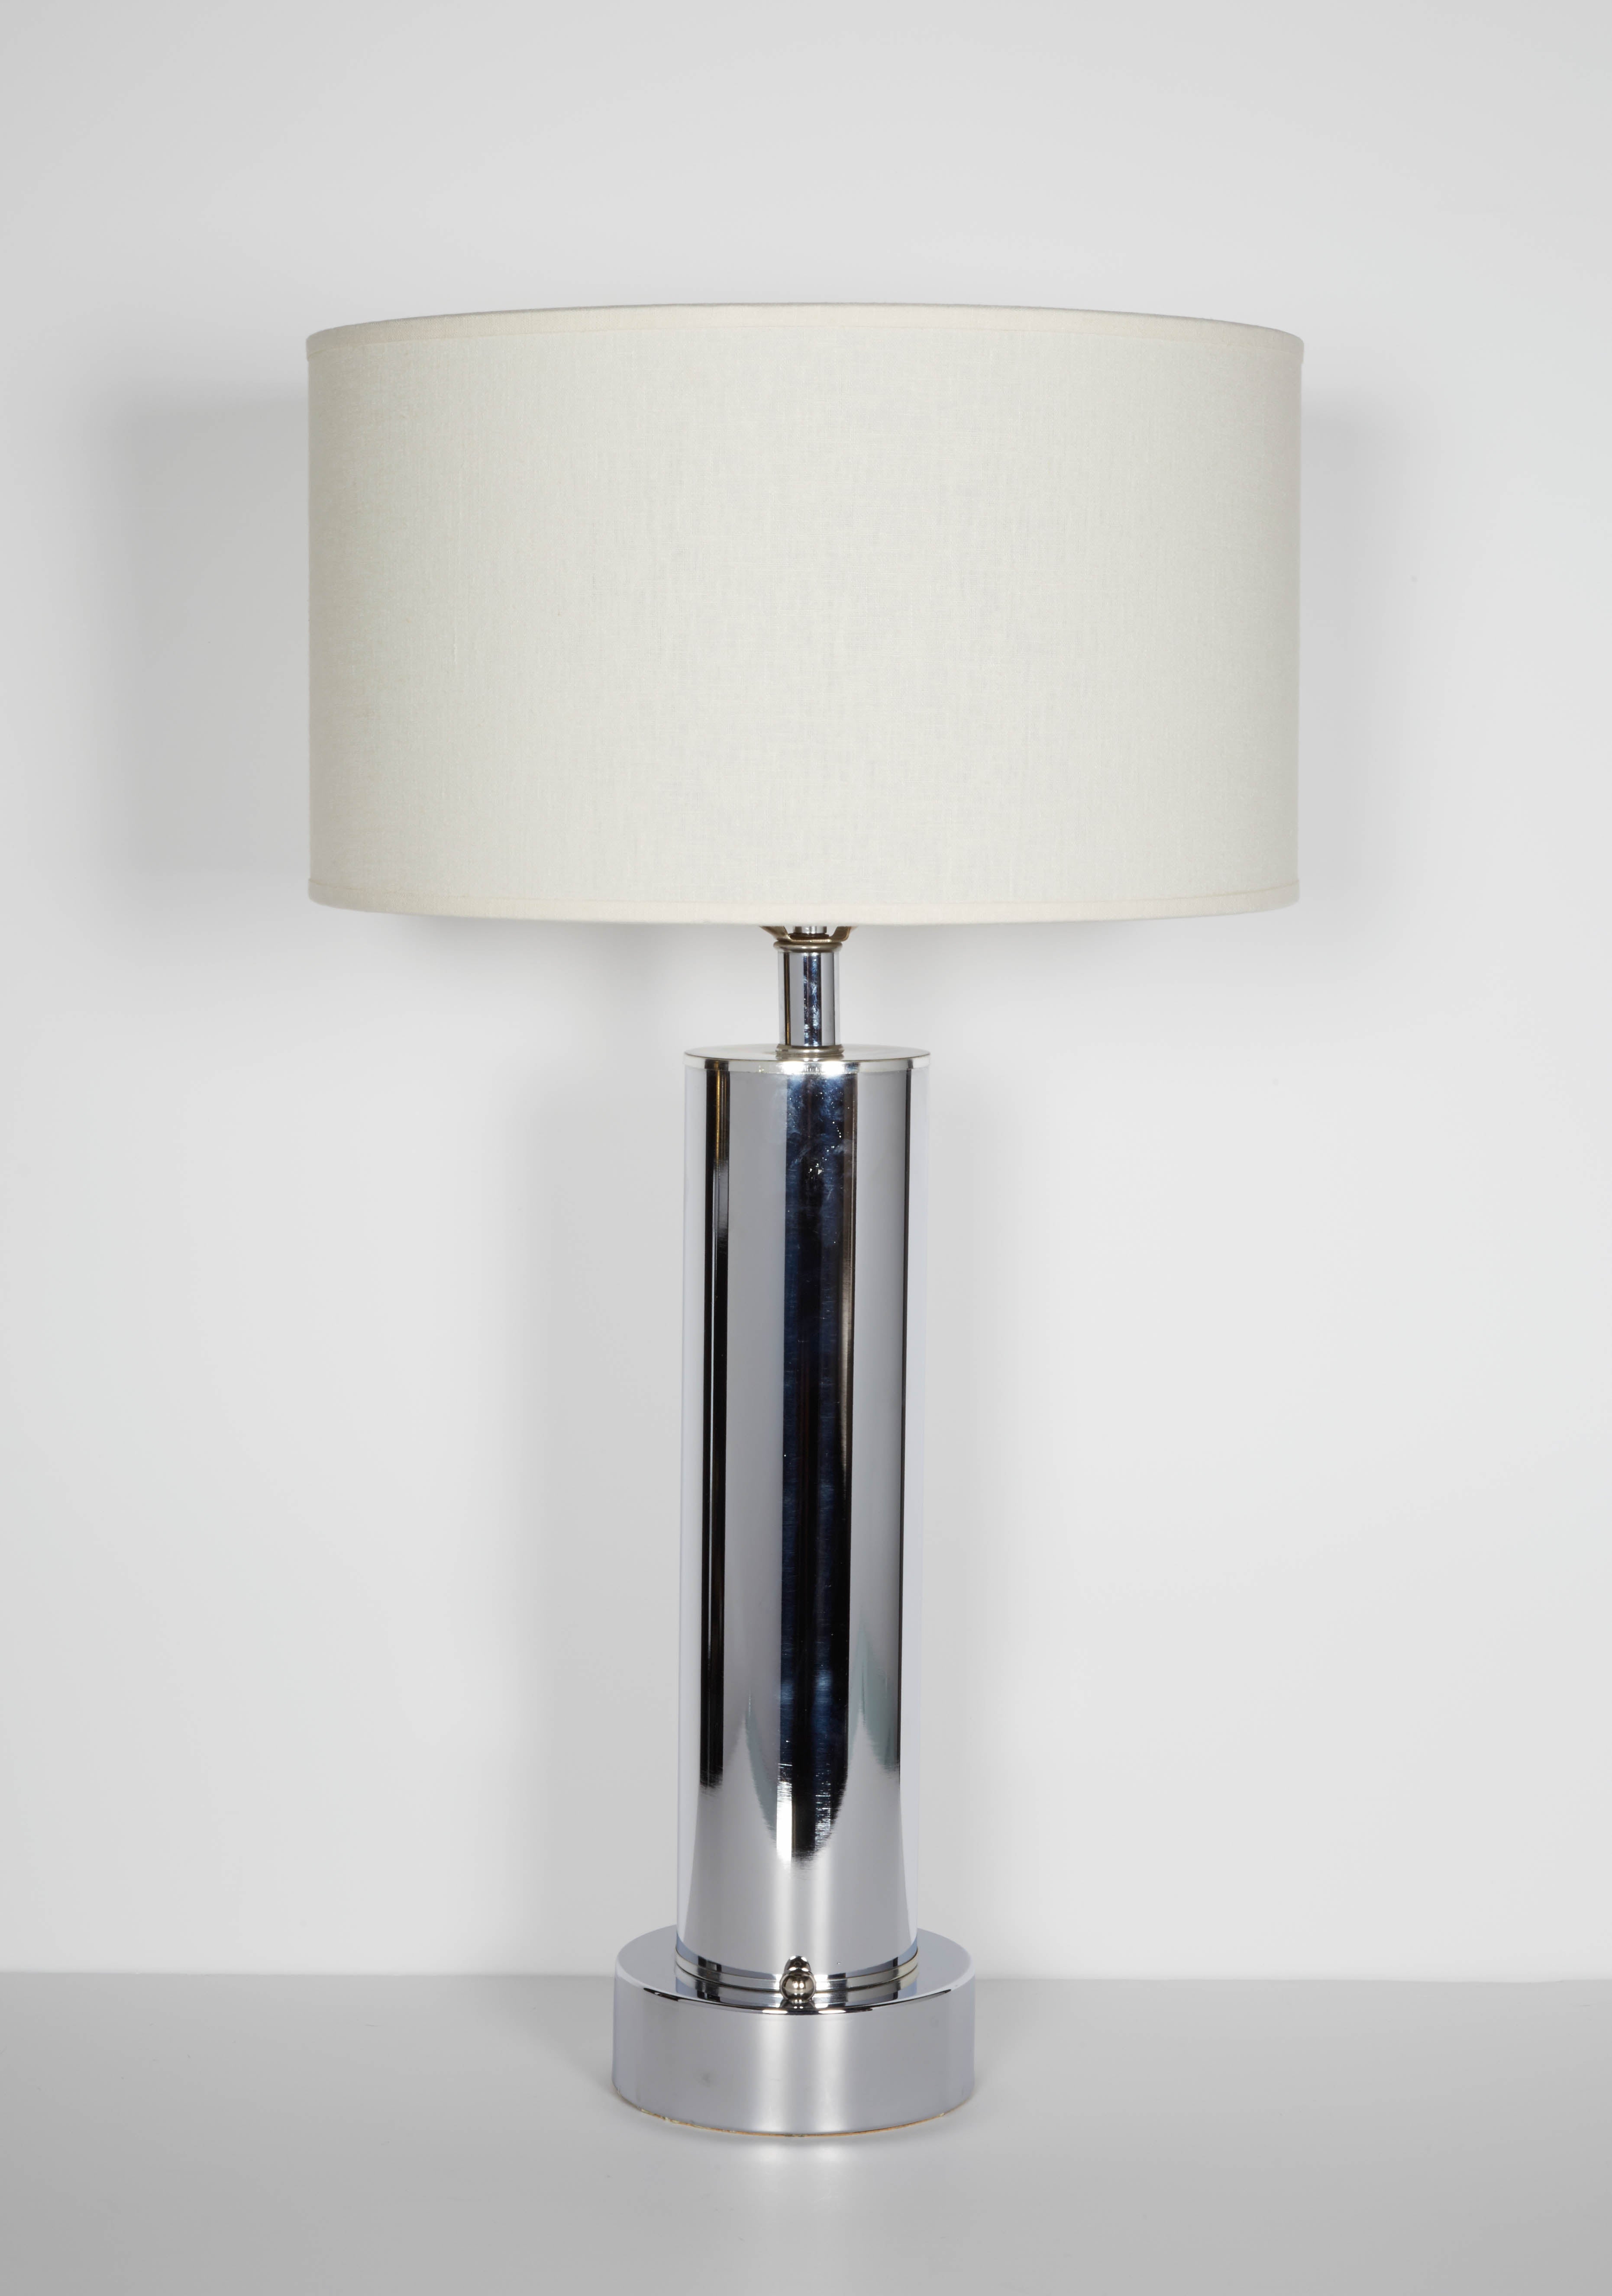 Pair of Machine Age Column Lamps in the Manner of Walter Von Nessen